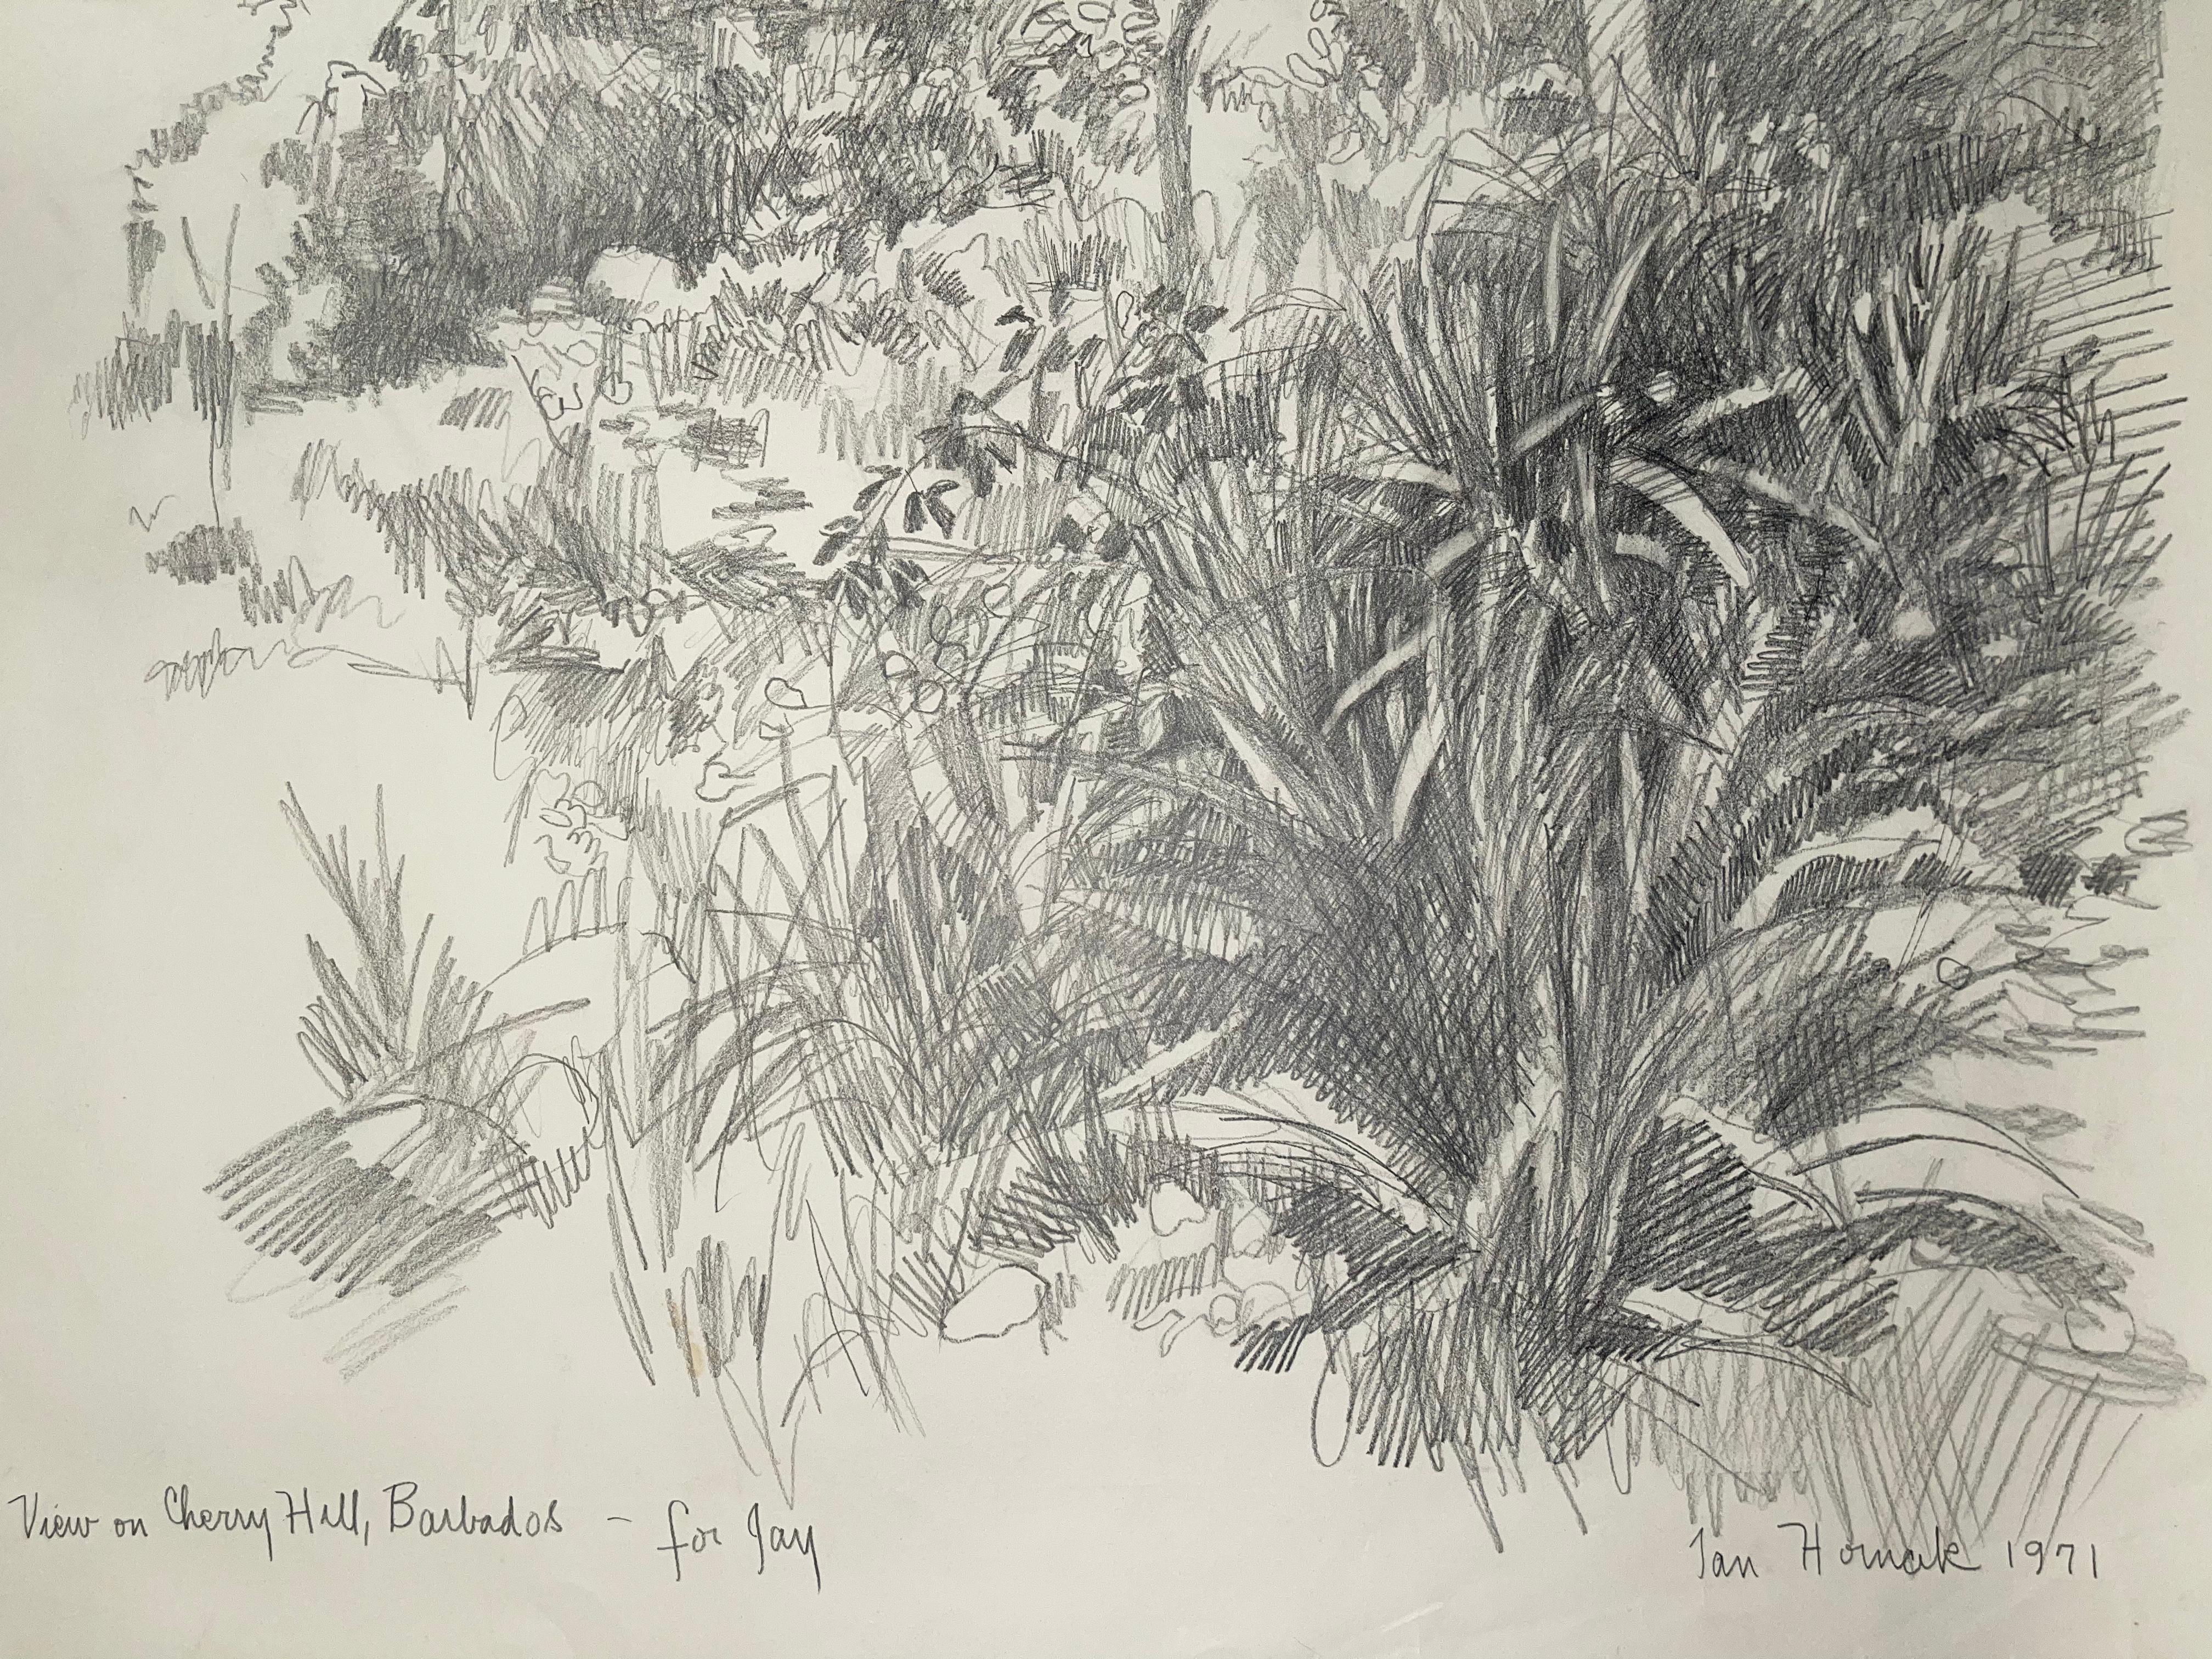 Ansicht auf dem Kirschbaumholz, Barbados (Grau), Abstract Drawing, von Ian Hornak